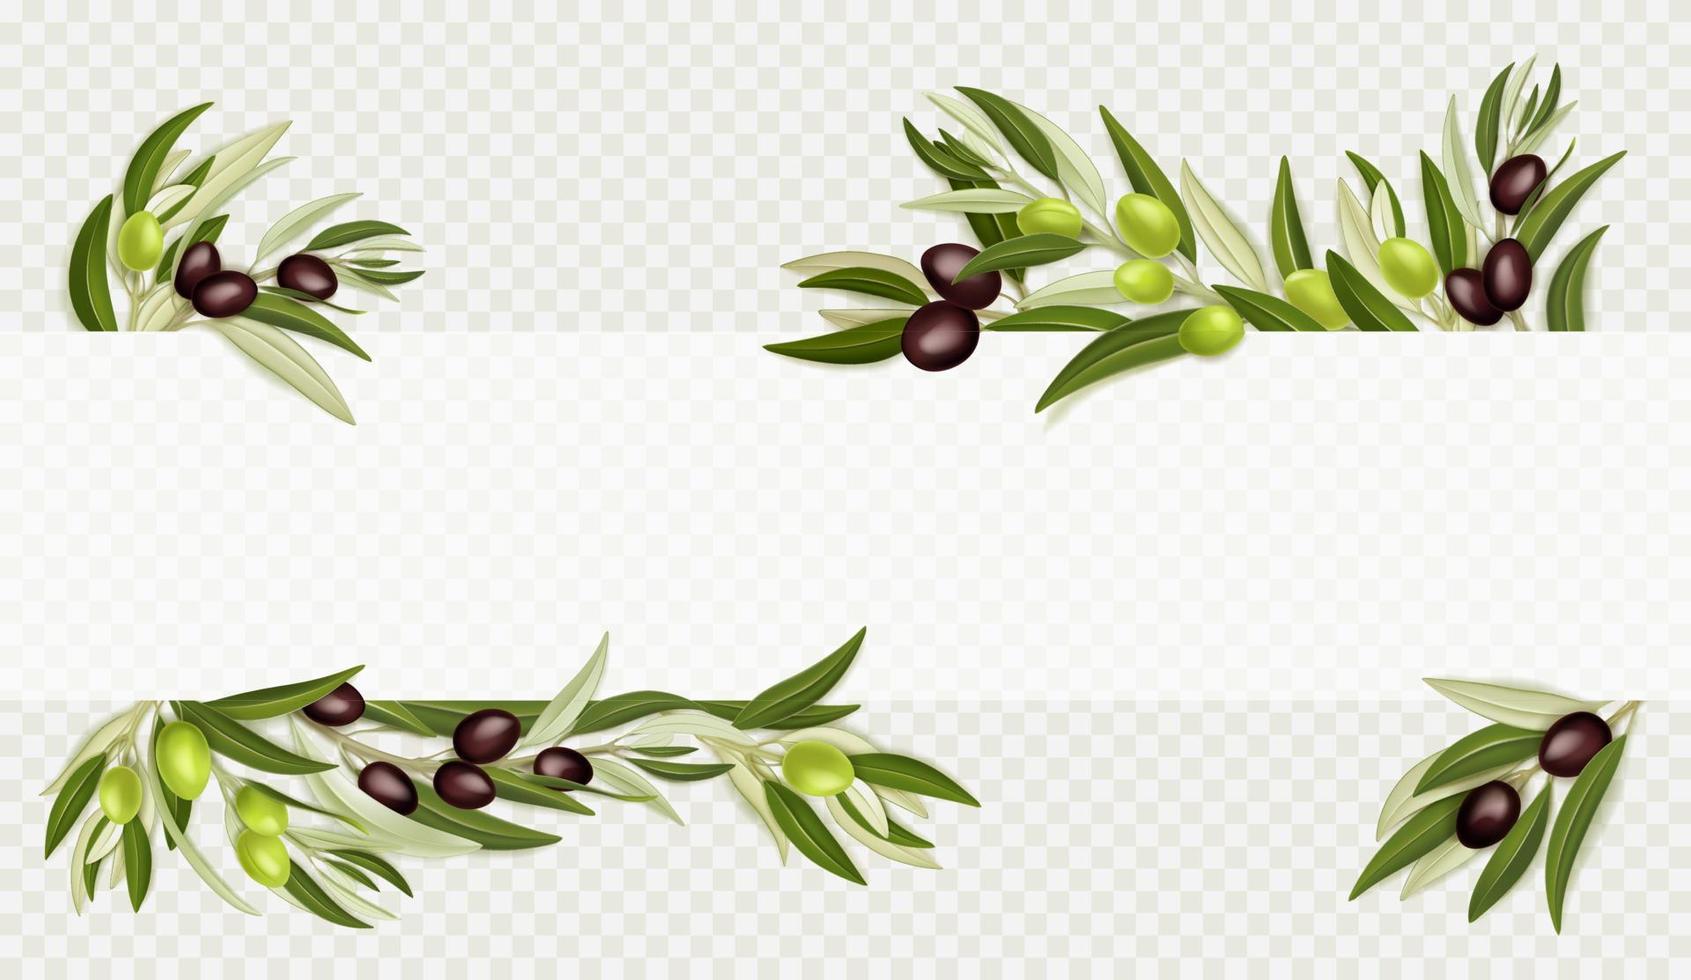 oliv grenar med svart och grön frukt vektor